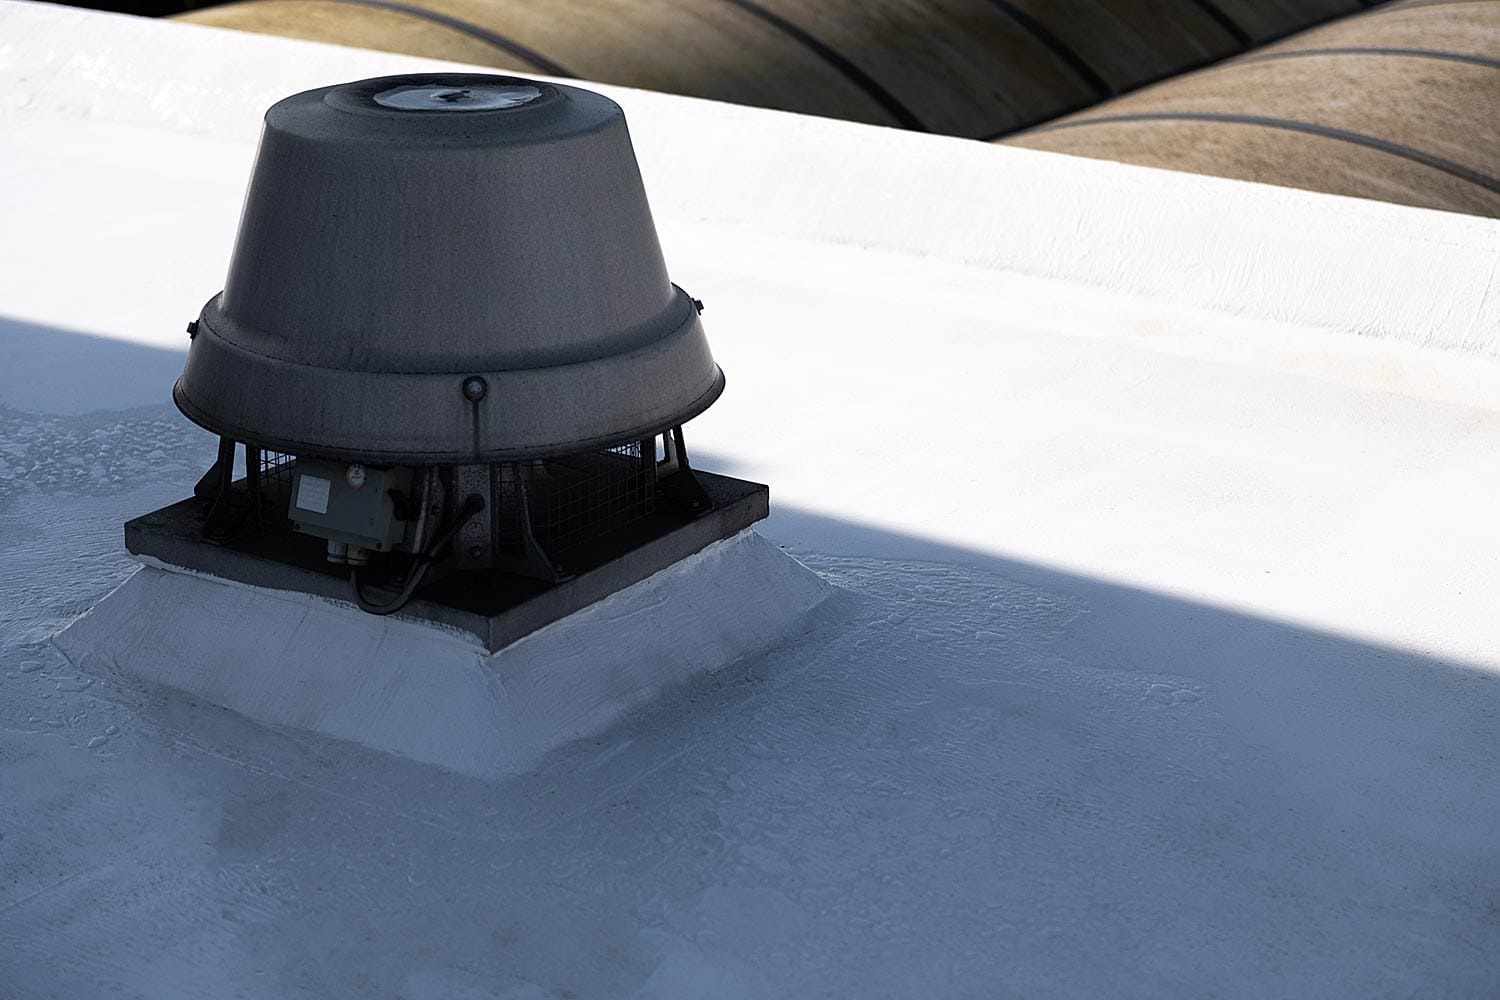 Hittereflecterend en waterdicht dak dankzij renovatie met Enduris Vloeibare dakbedekking – Den Bosch